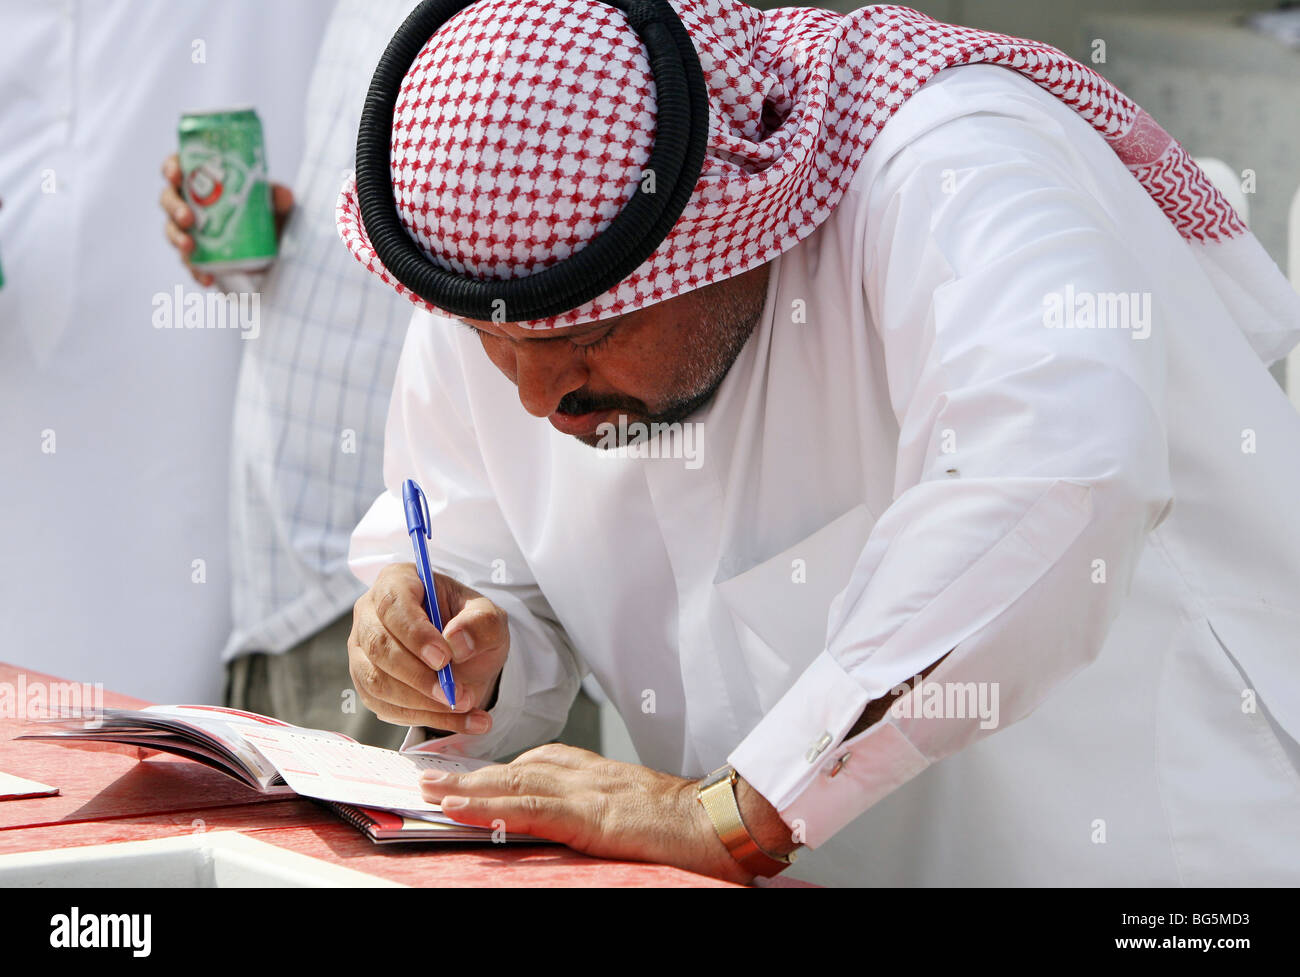 Ein Mann ausfüllen eine Wette Ticket, Dubai, Vereinigte Arabische Emirate Stockfoto